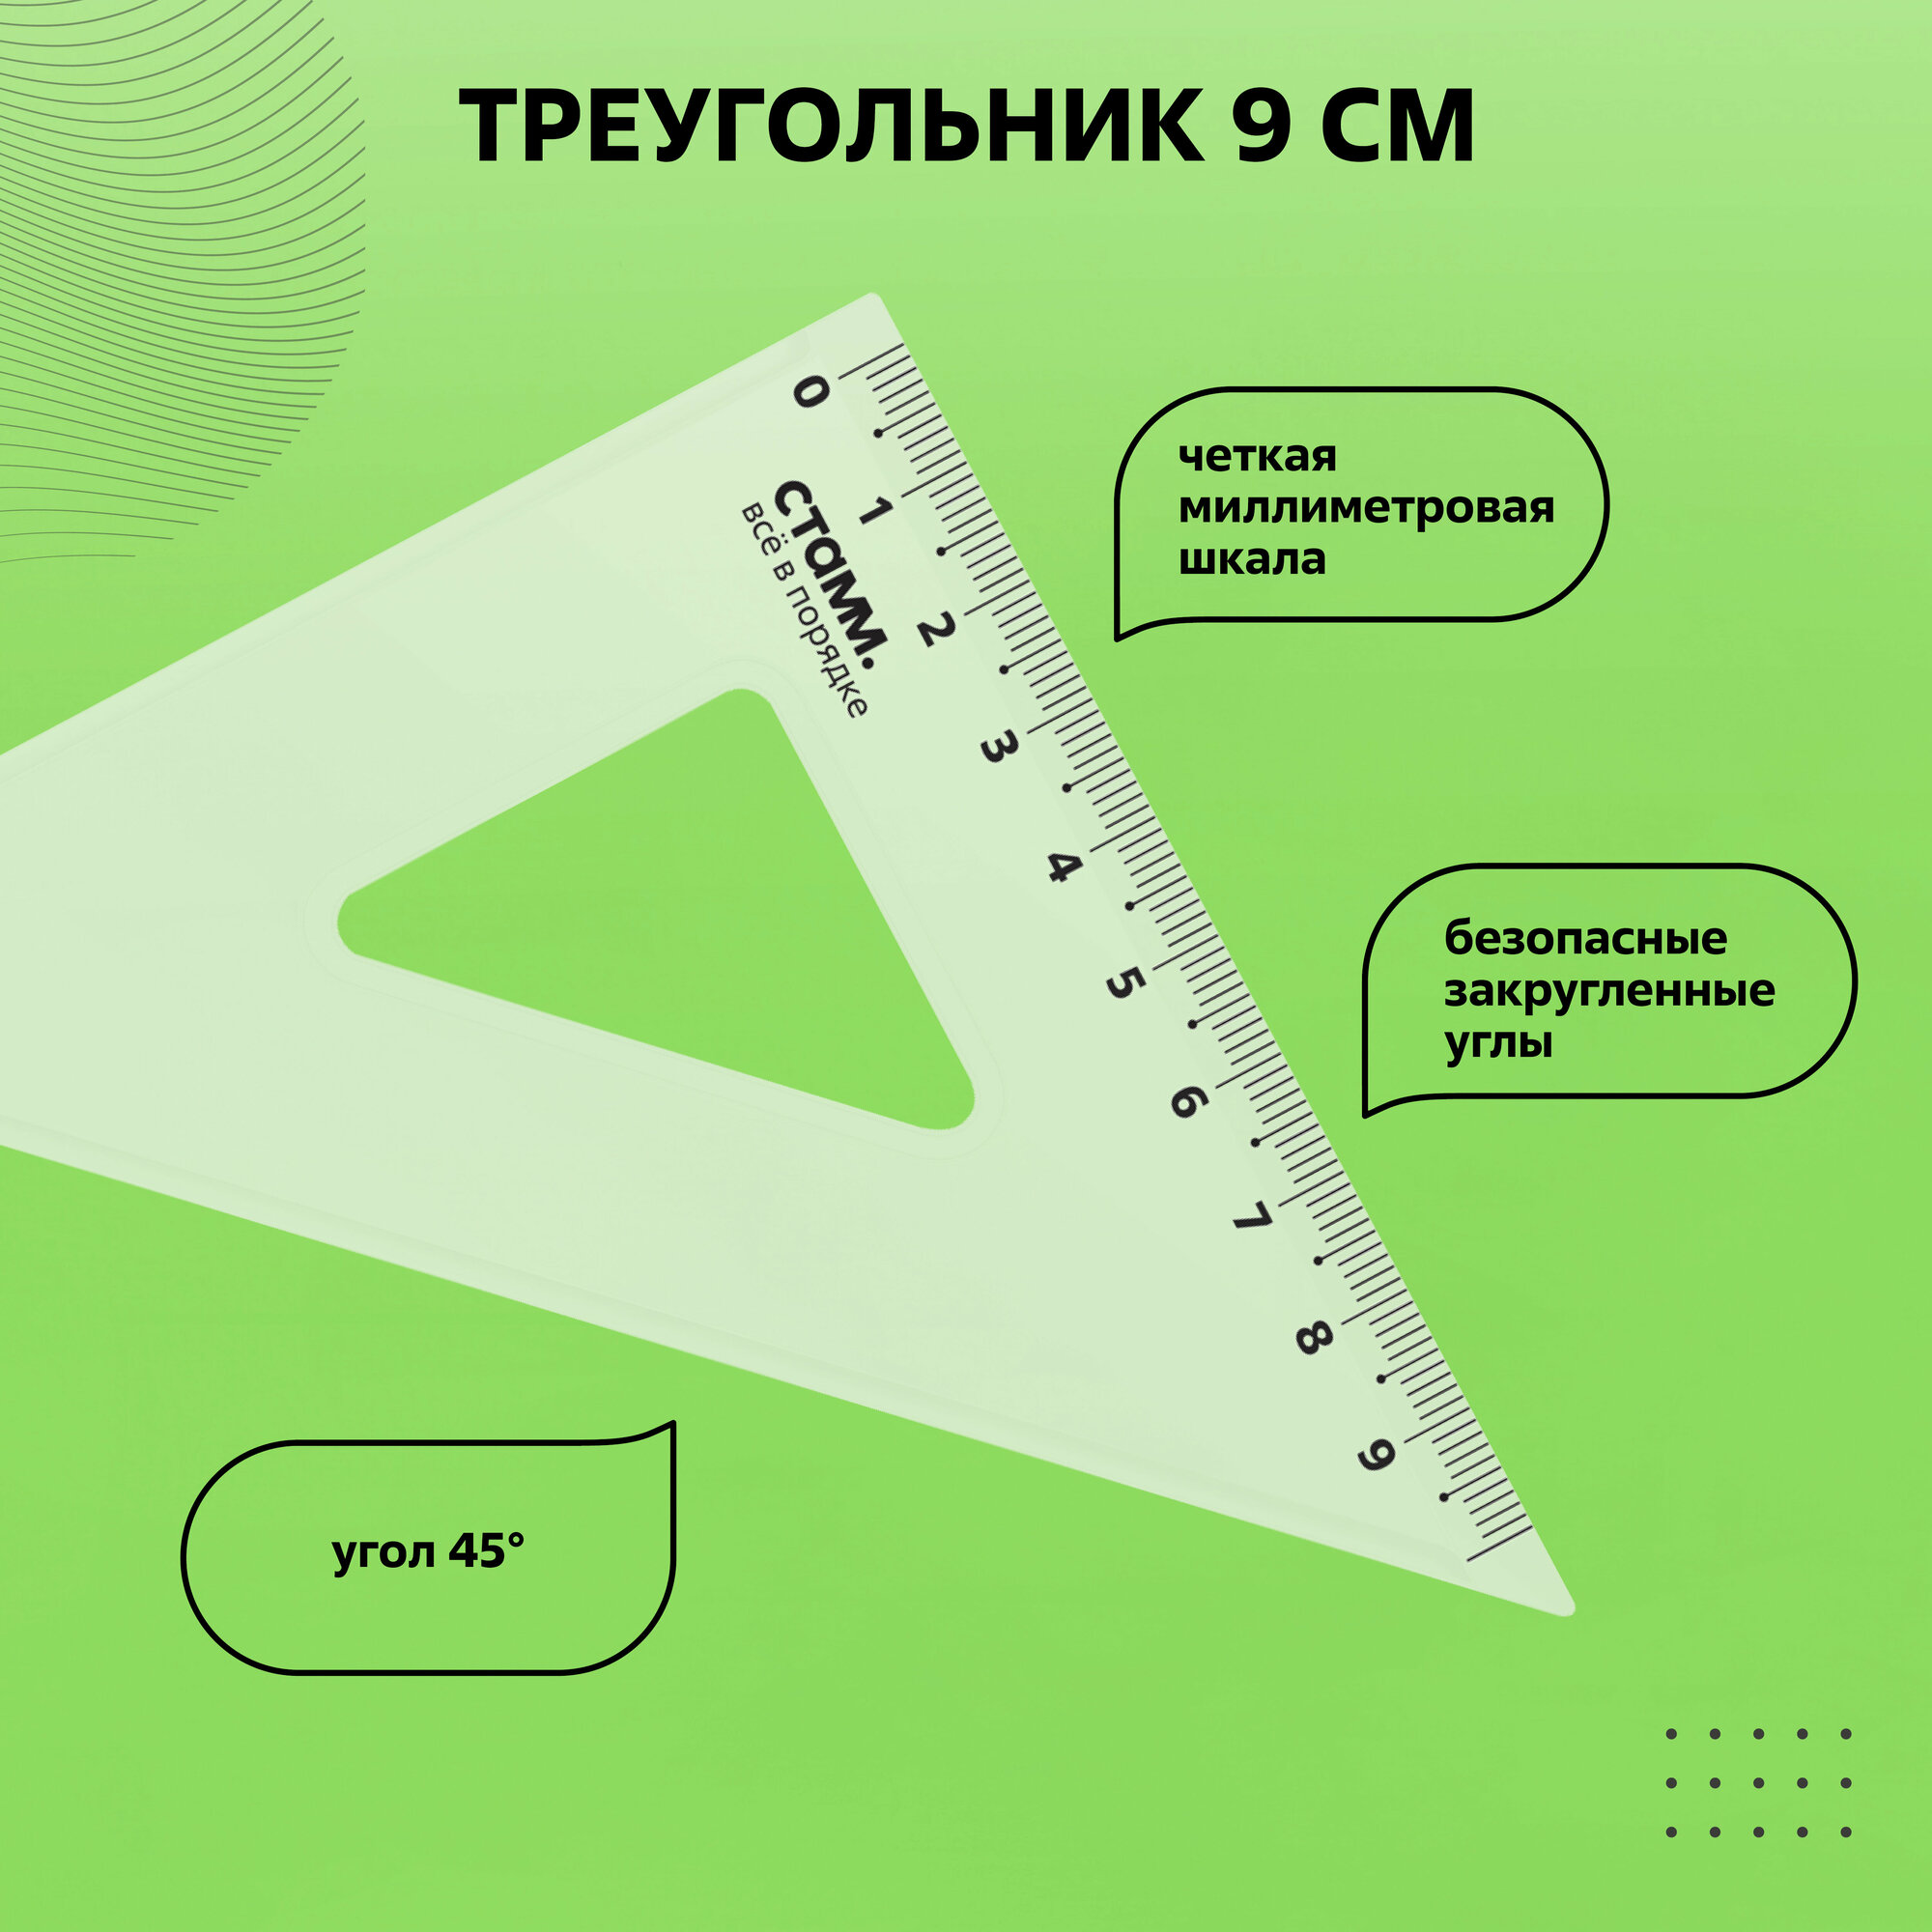 Набор линеек СТАММ для школы, размер M линейка 20см, 2 треугольника, транспортир / канцелярия школьная, прозрачная для геометрии, черчения / измерительные принадлежности